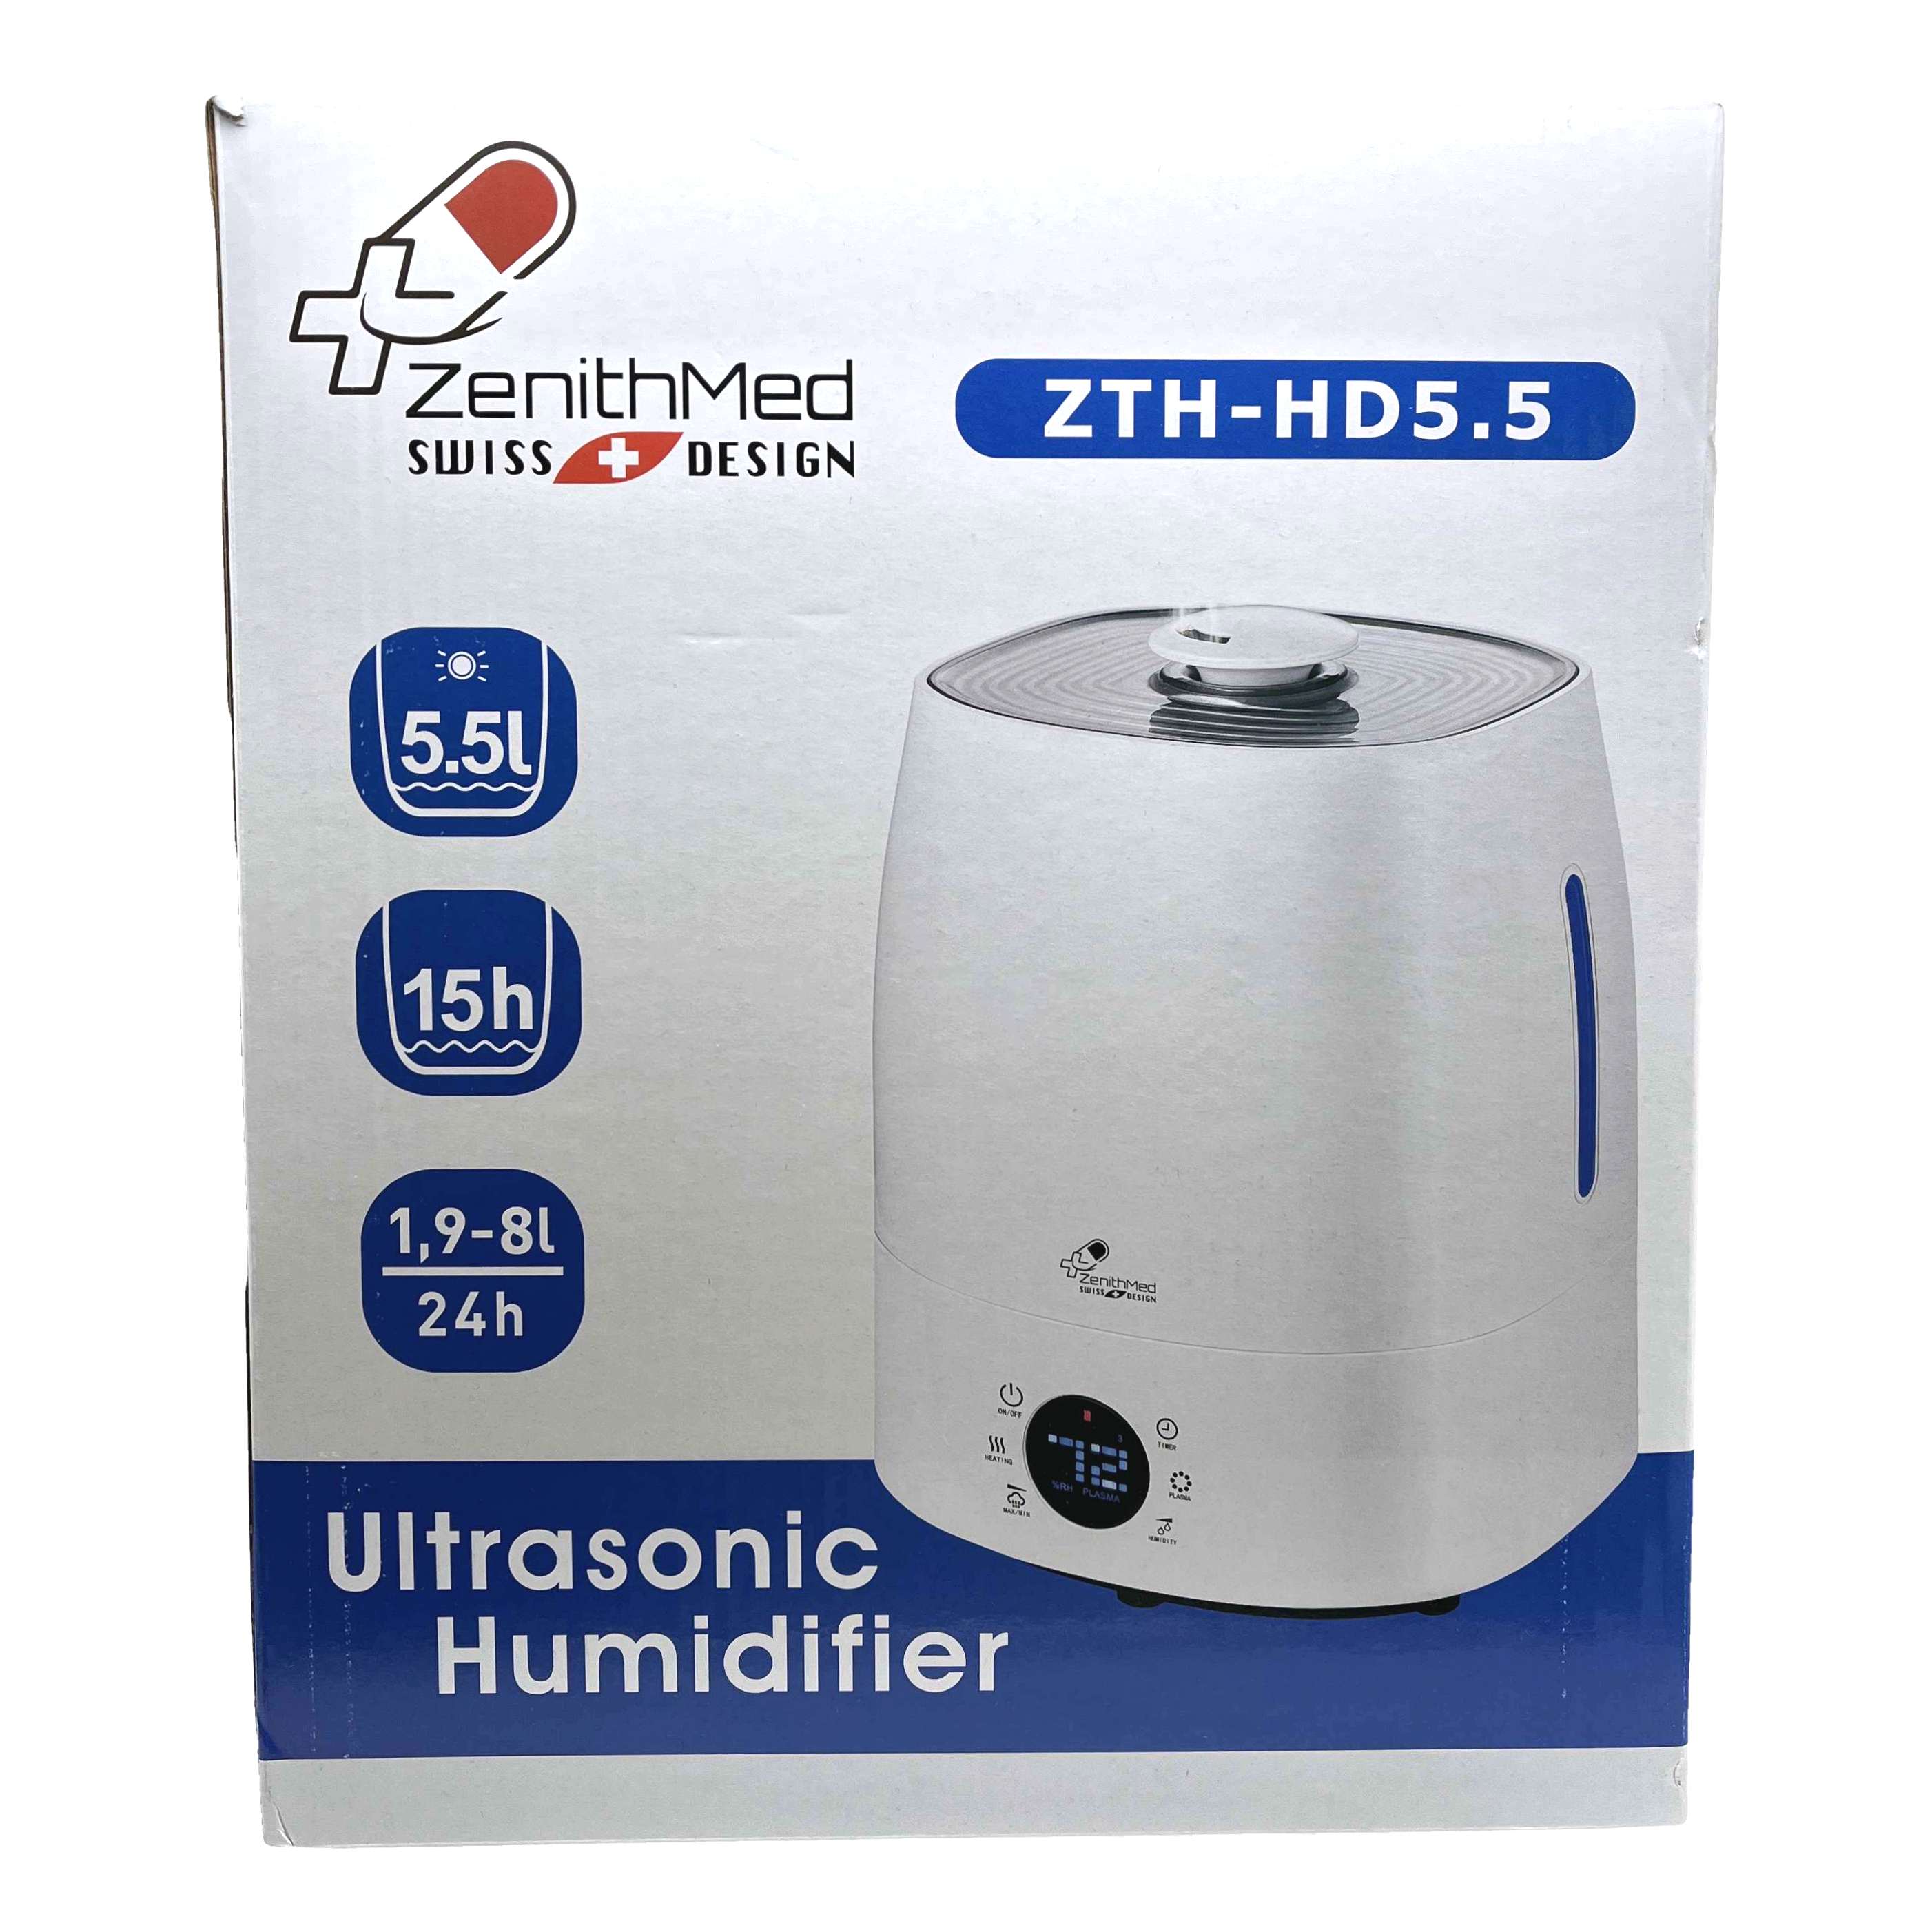 دستگاه بخور سرد و گرم زنیت مد ZenithMed ZTH-HD5.5